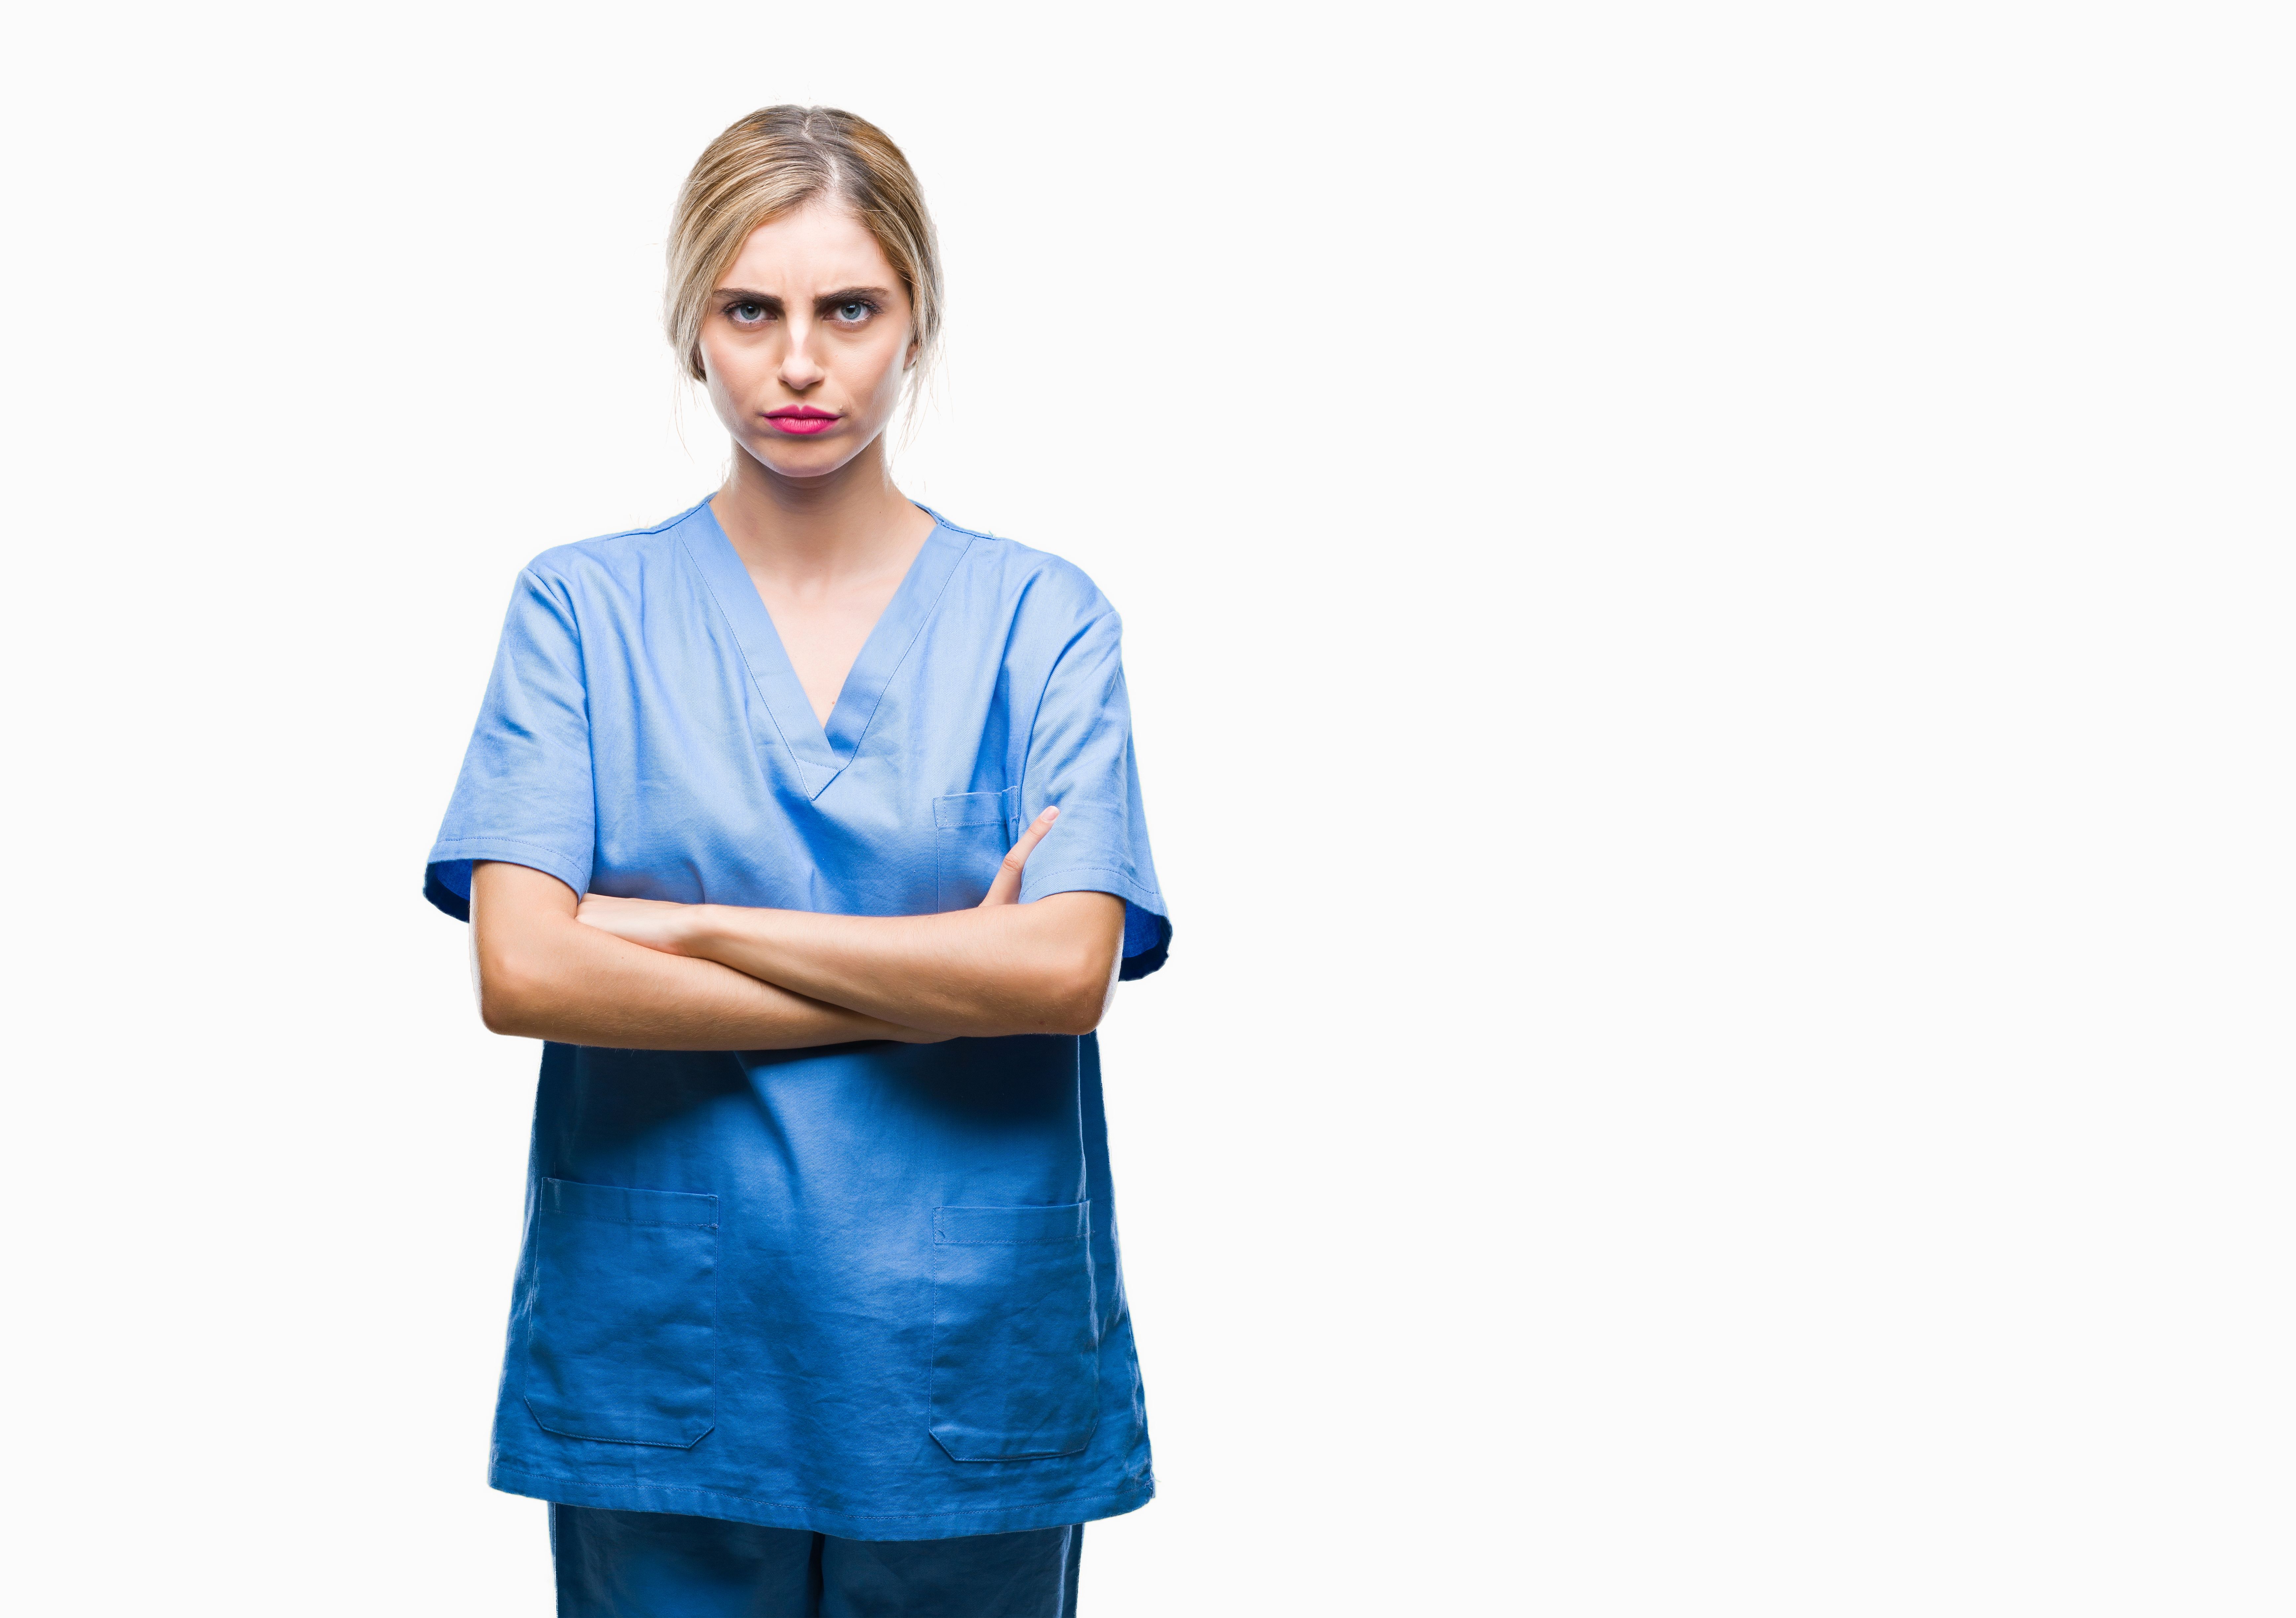 Une infirmière bouleversée. | Source : Getty Images